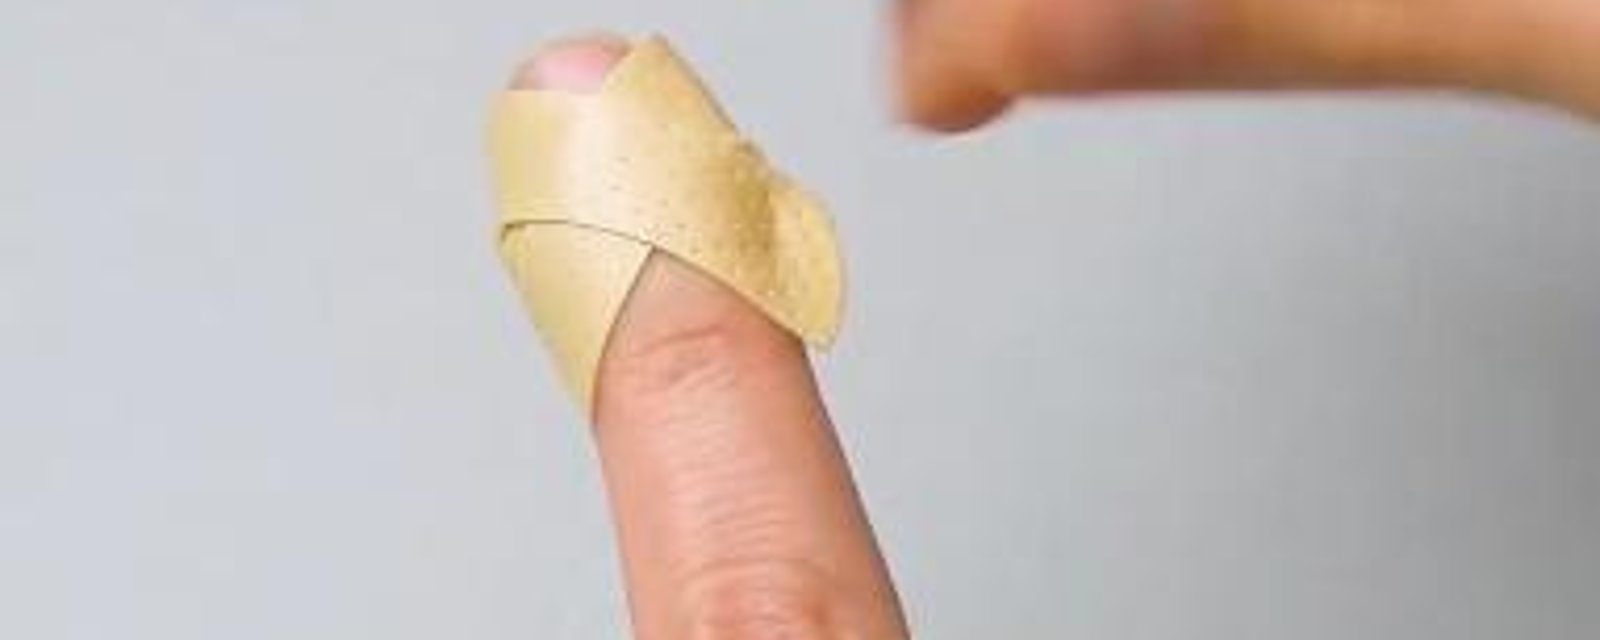 6 façons d'appliquer des bandages que vous devez absolument connaître